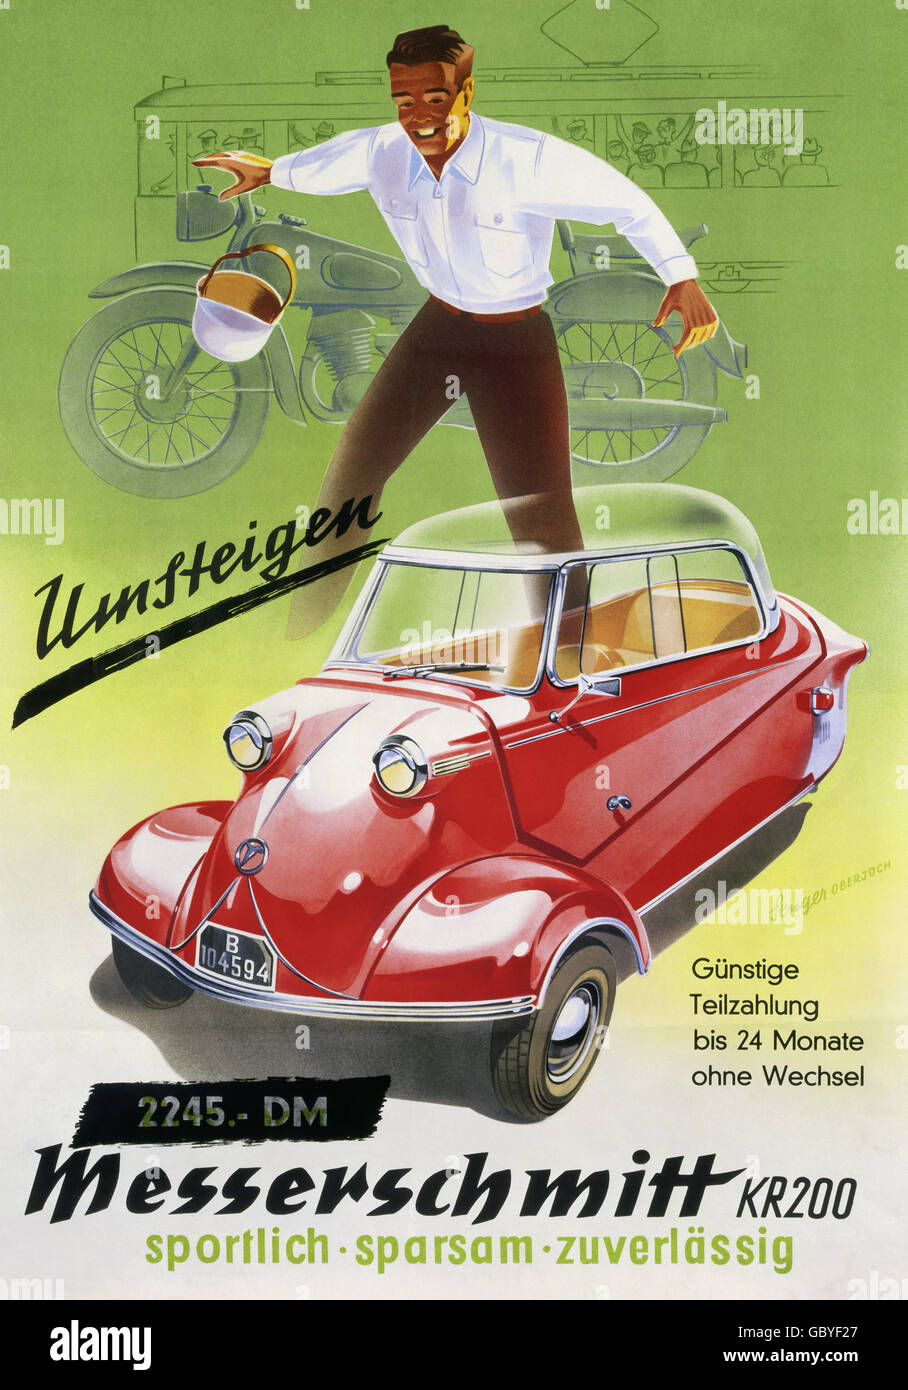 Pubblicità, automobile, poster pubblicitari per il nuovo Messerschmitt KR200 Kabinenroller (scooter da cabina), 1955, diritti aggiuntivi-clearences-non disponibile Foto Stock